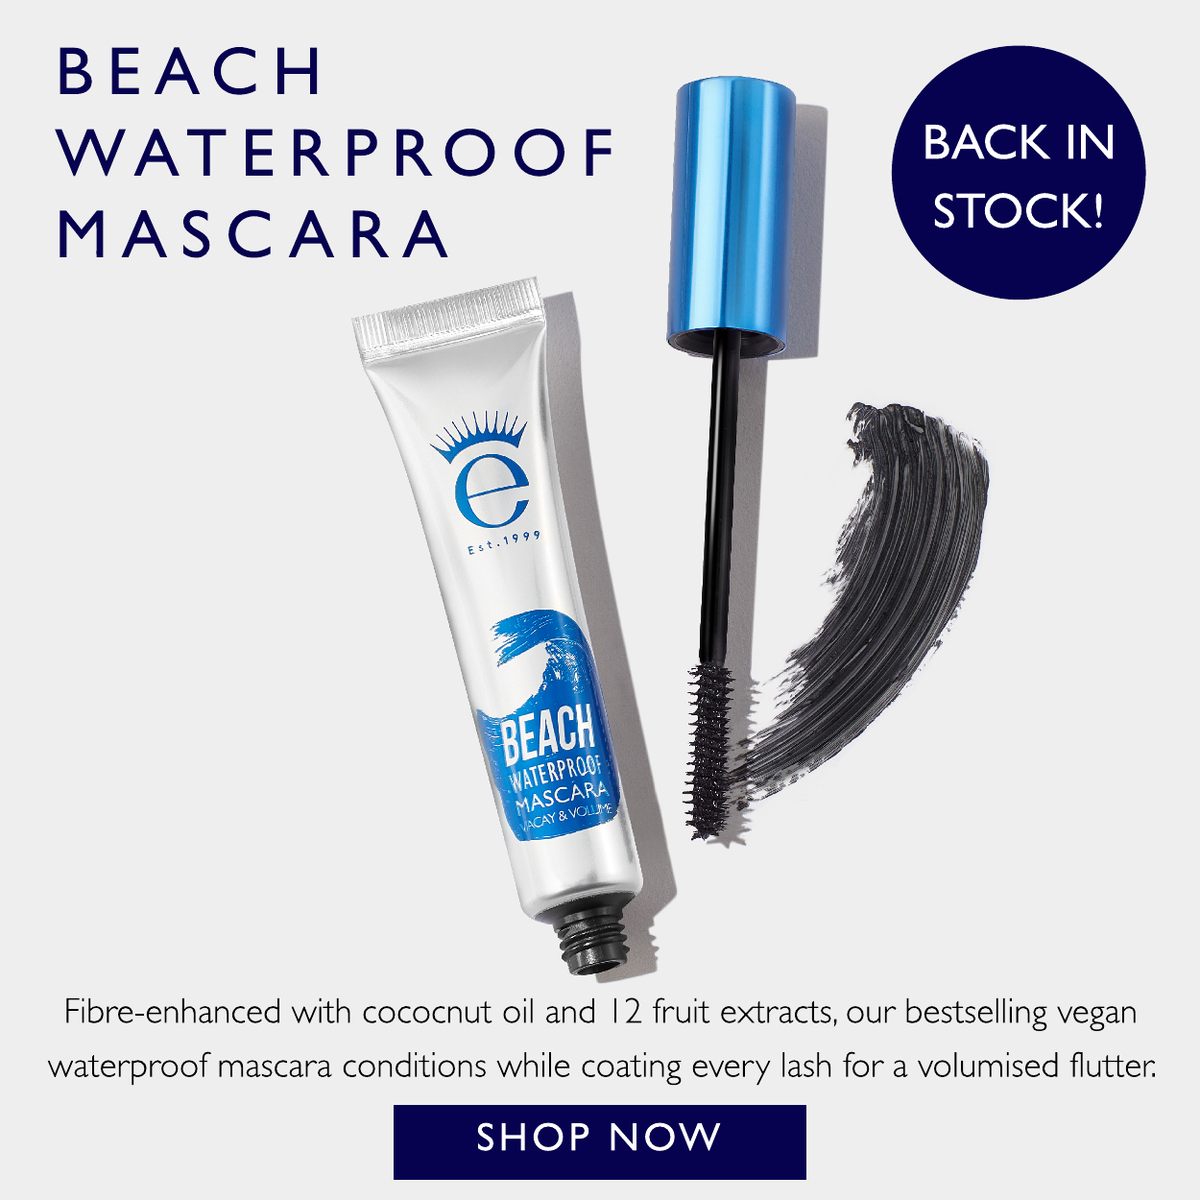 BEACH WATERPROOF MASCARA IS BACK IN STOCK!